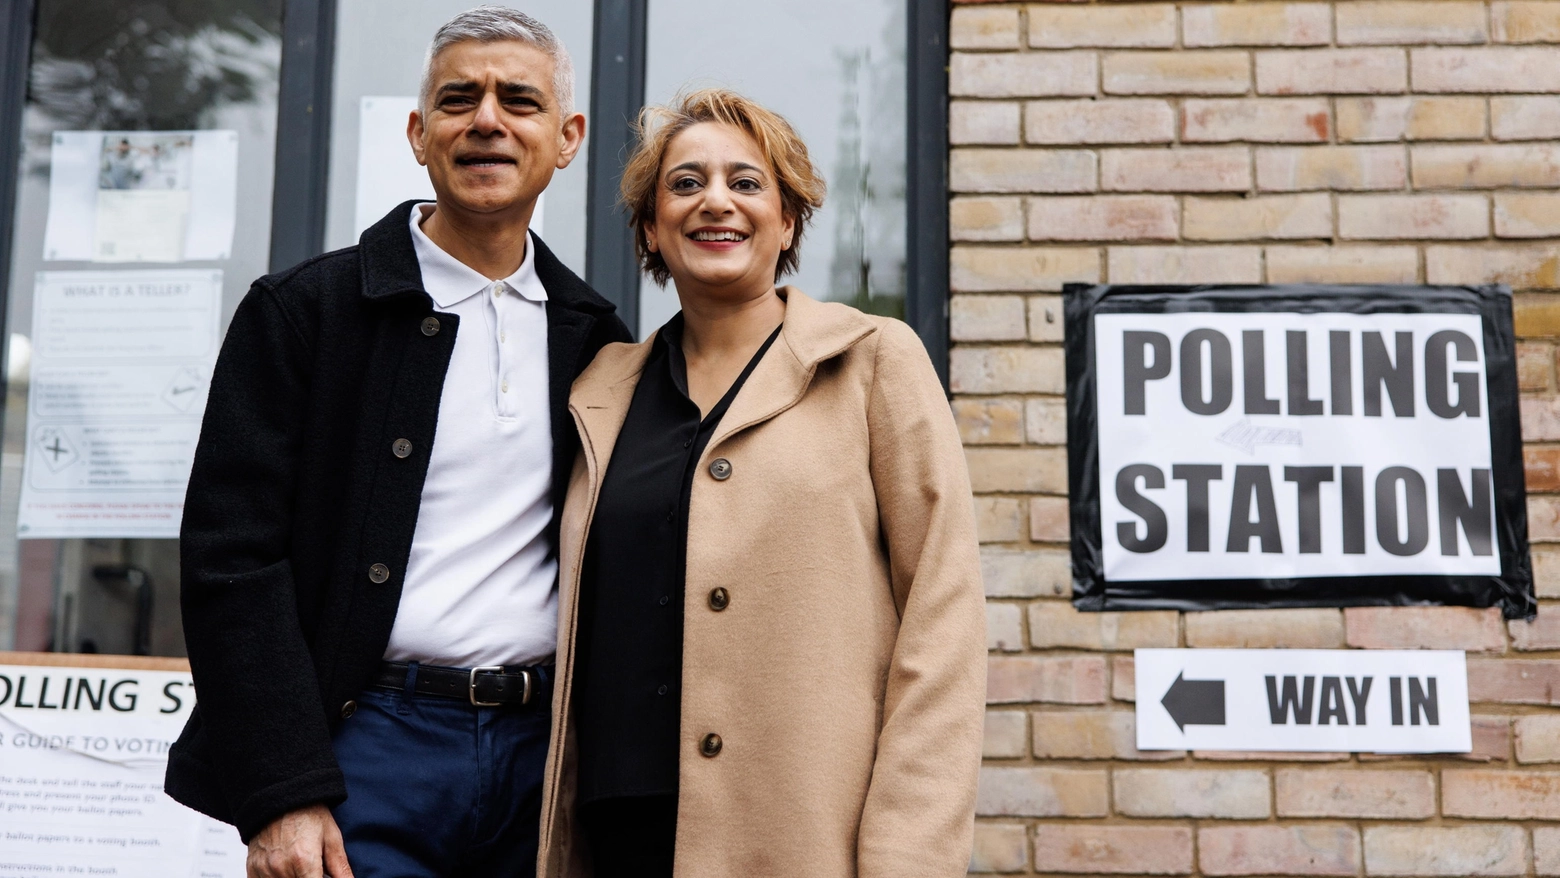 Il sindaco di Londra, Sadiq Khan, con la moglie al seggio elettorale (Ansa)